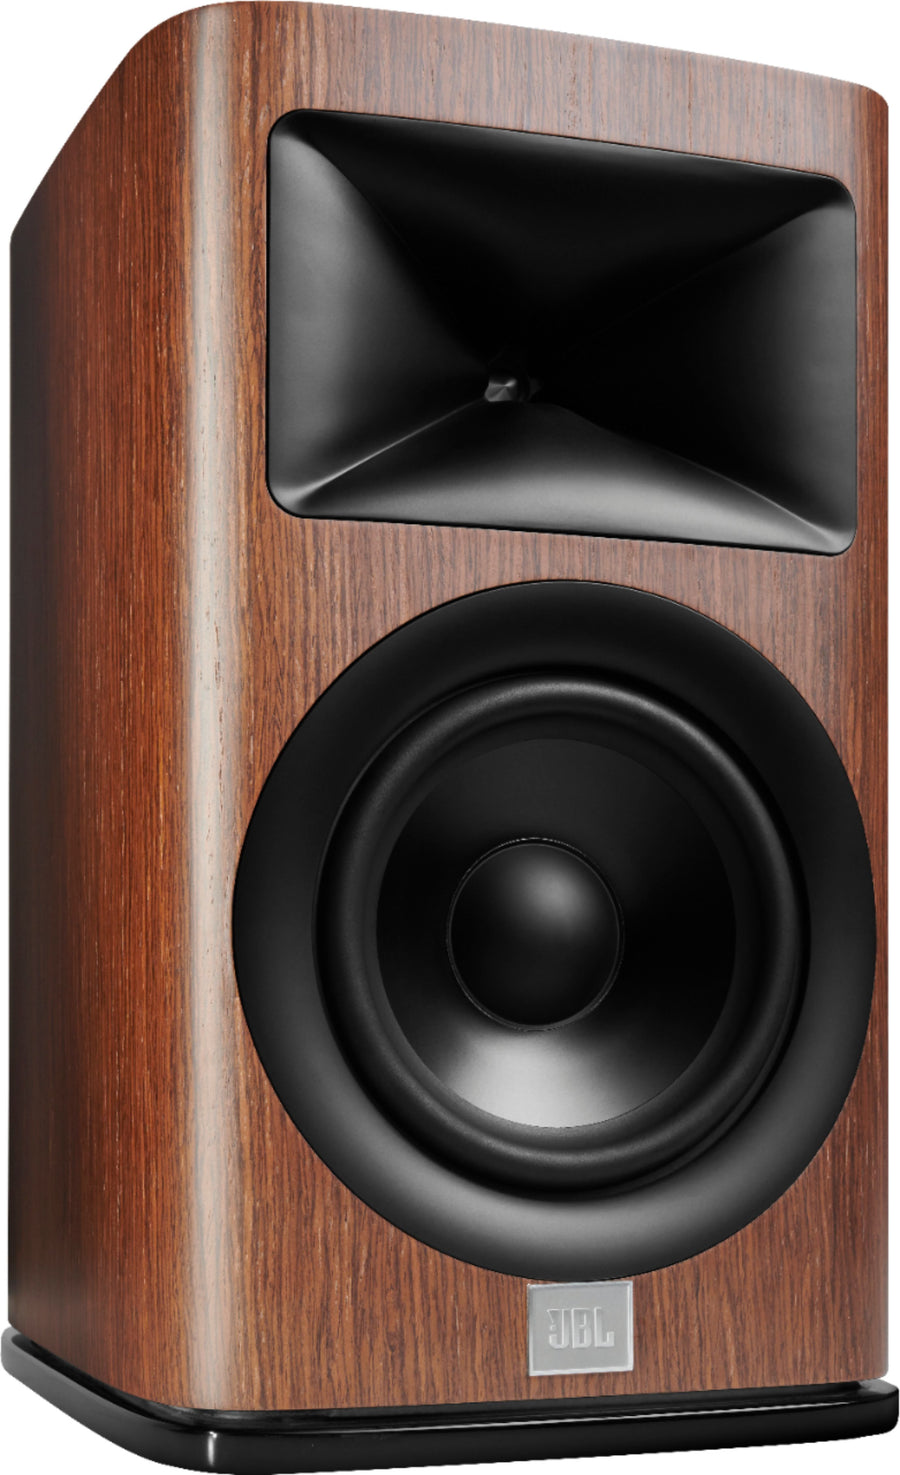 JBL - HDI1600 6.5" 2-way bookshelf loudspeaker with 1" compression tweeter, each - Walnut Wood Finish_0